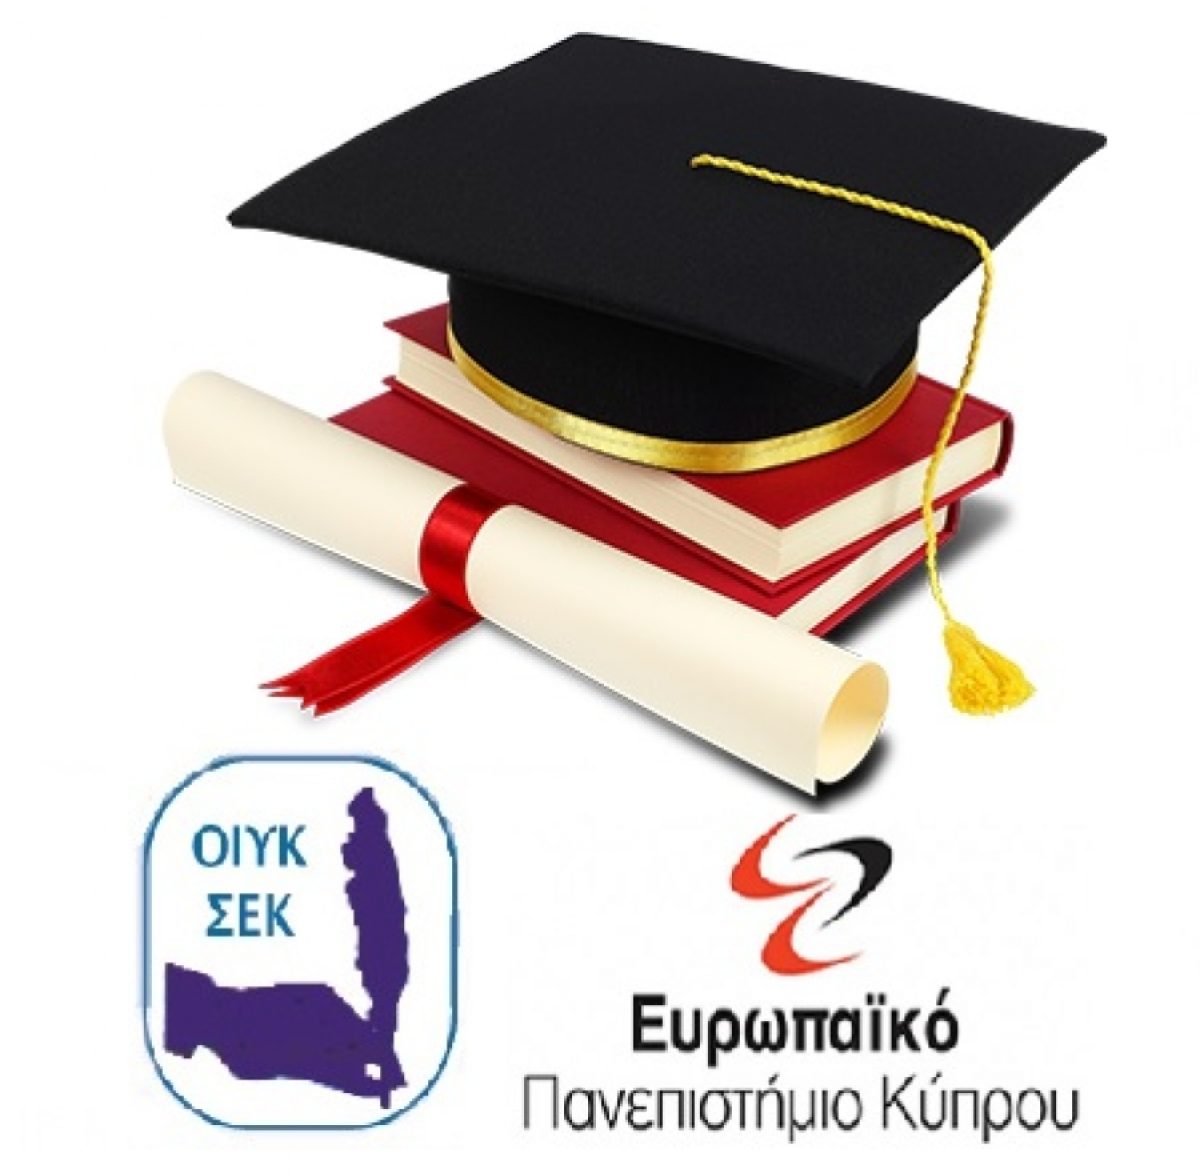 Υποτροφίες σε μεταπτυχιακά και προπτυχιακά πρόγραμμα νοσηλευτικής από την ΟΙΥΚ ΣΕΚ και το Ευρωπαϊκό Πανεπιστήμιο Κύπρου